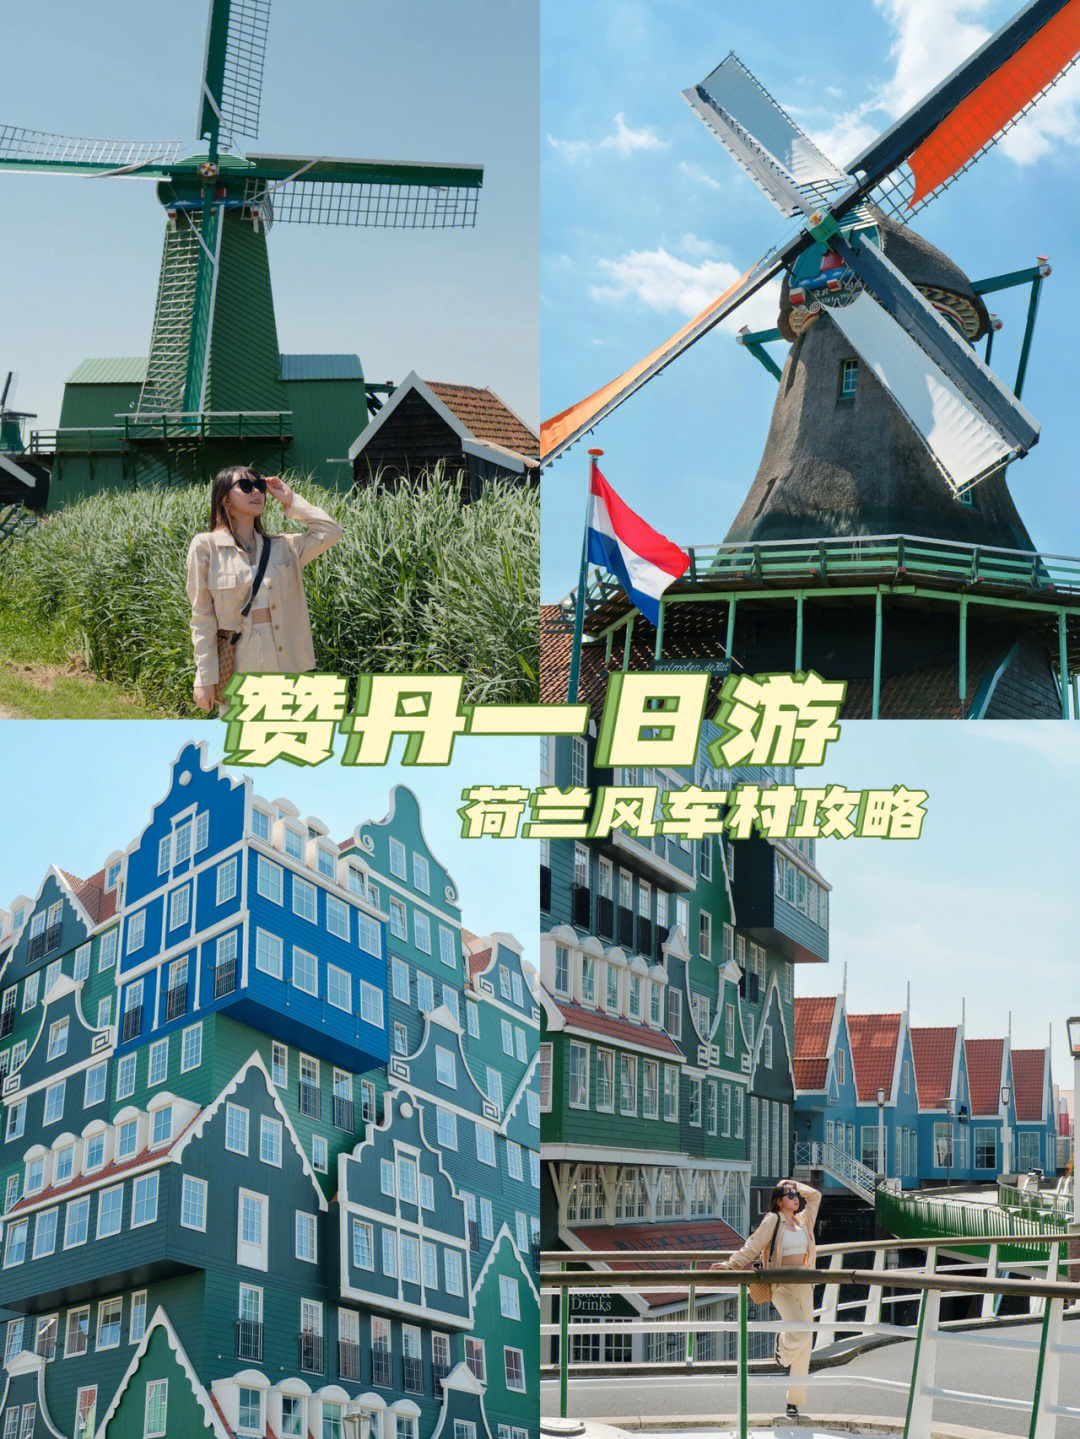 荷兰风车乐高教案图片